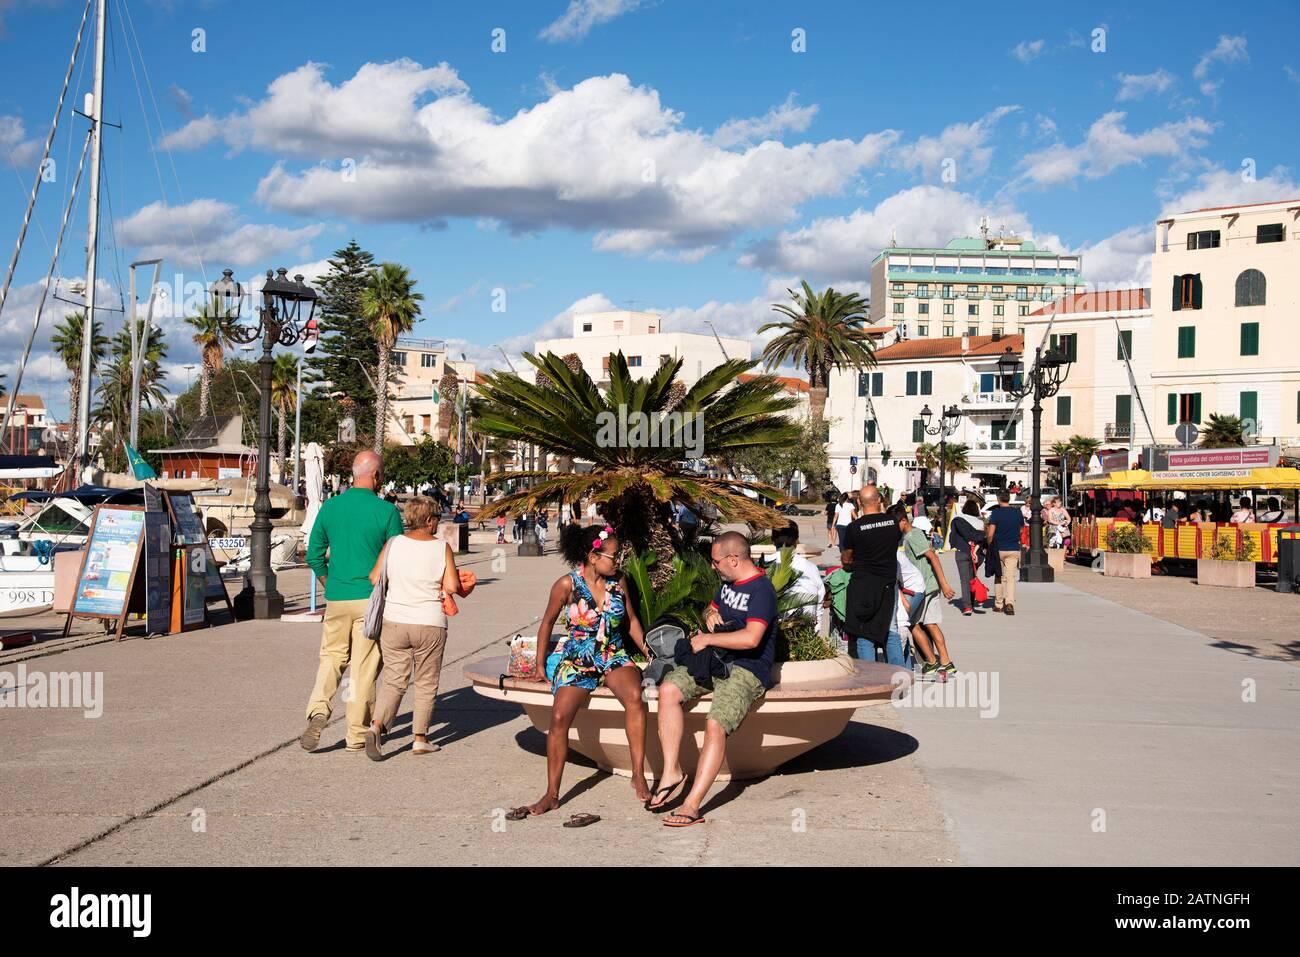 Alghero, ITALIA - 17 SETTEMBRE 2017: Persone che camminano vicino al porto di Alghero, Sardegna, Italia, vicino al Centro storico, il centro storico della città Foto Stock